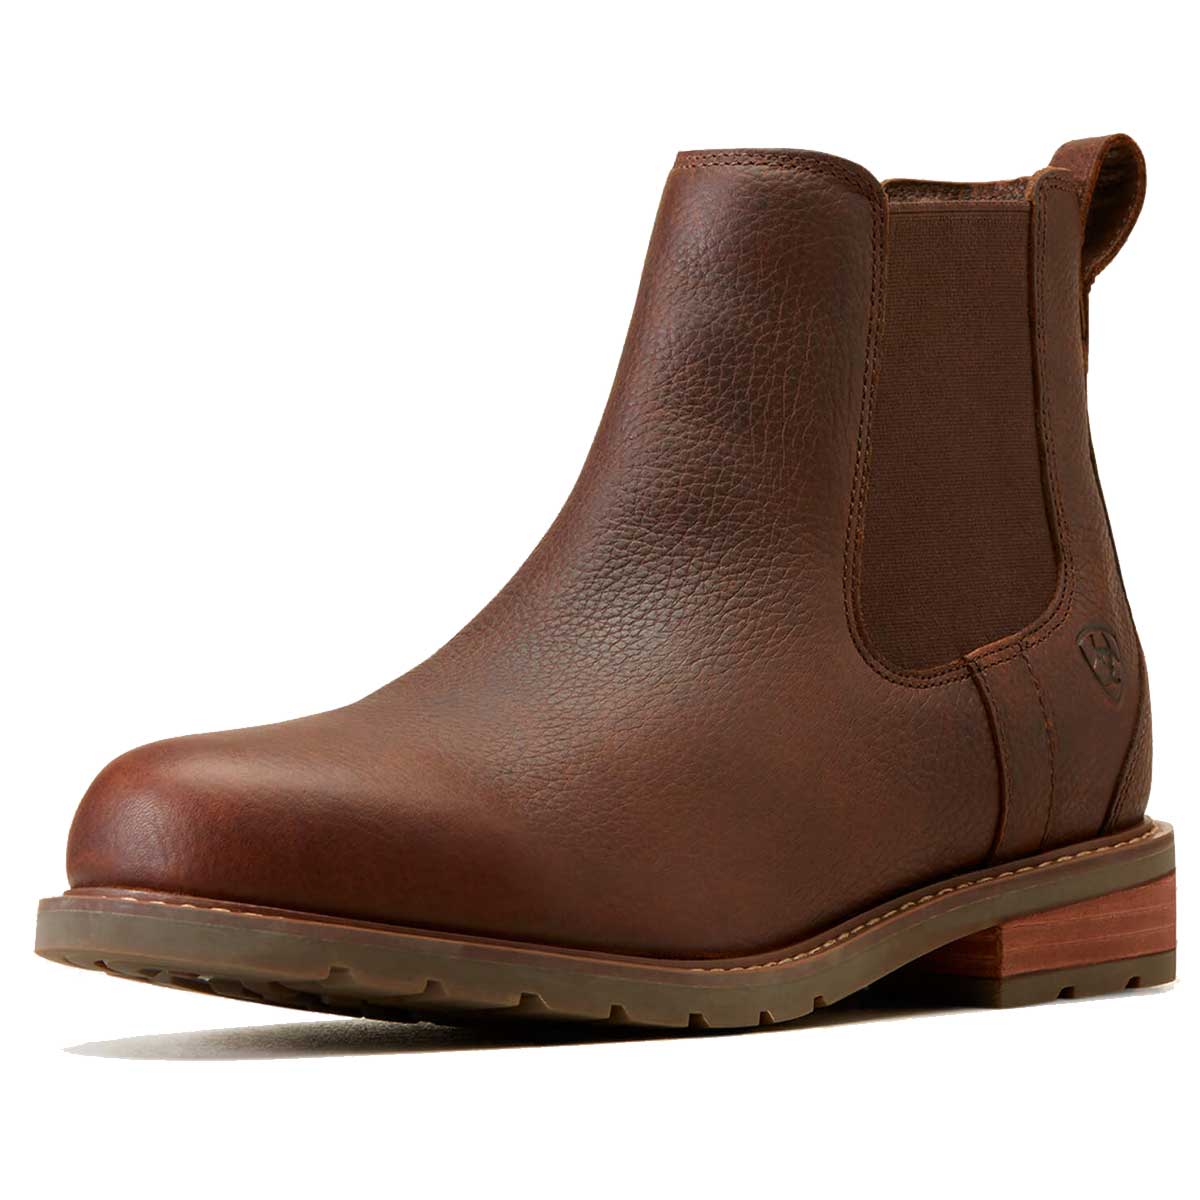 ARIAT Wexford Waterproof Chelsea Boots - Mens - Dark Brown